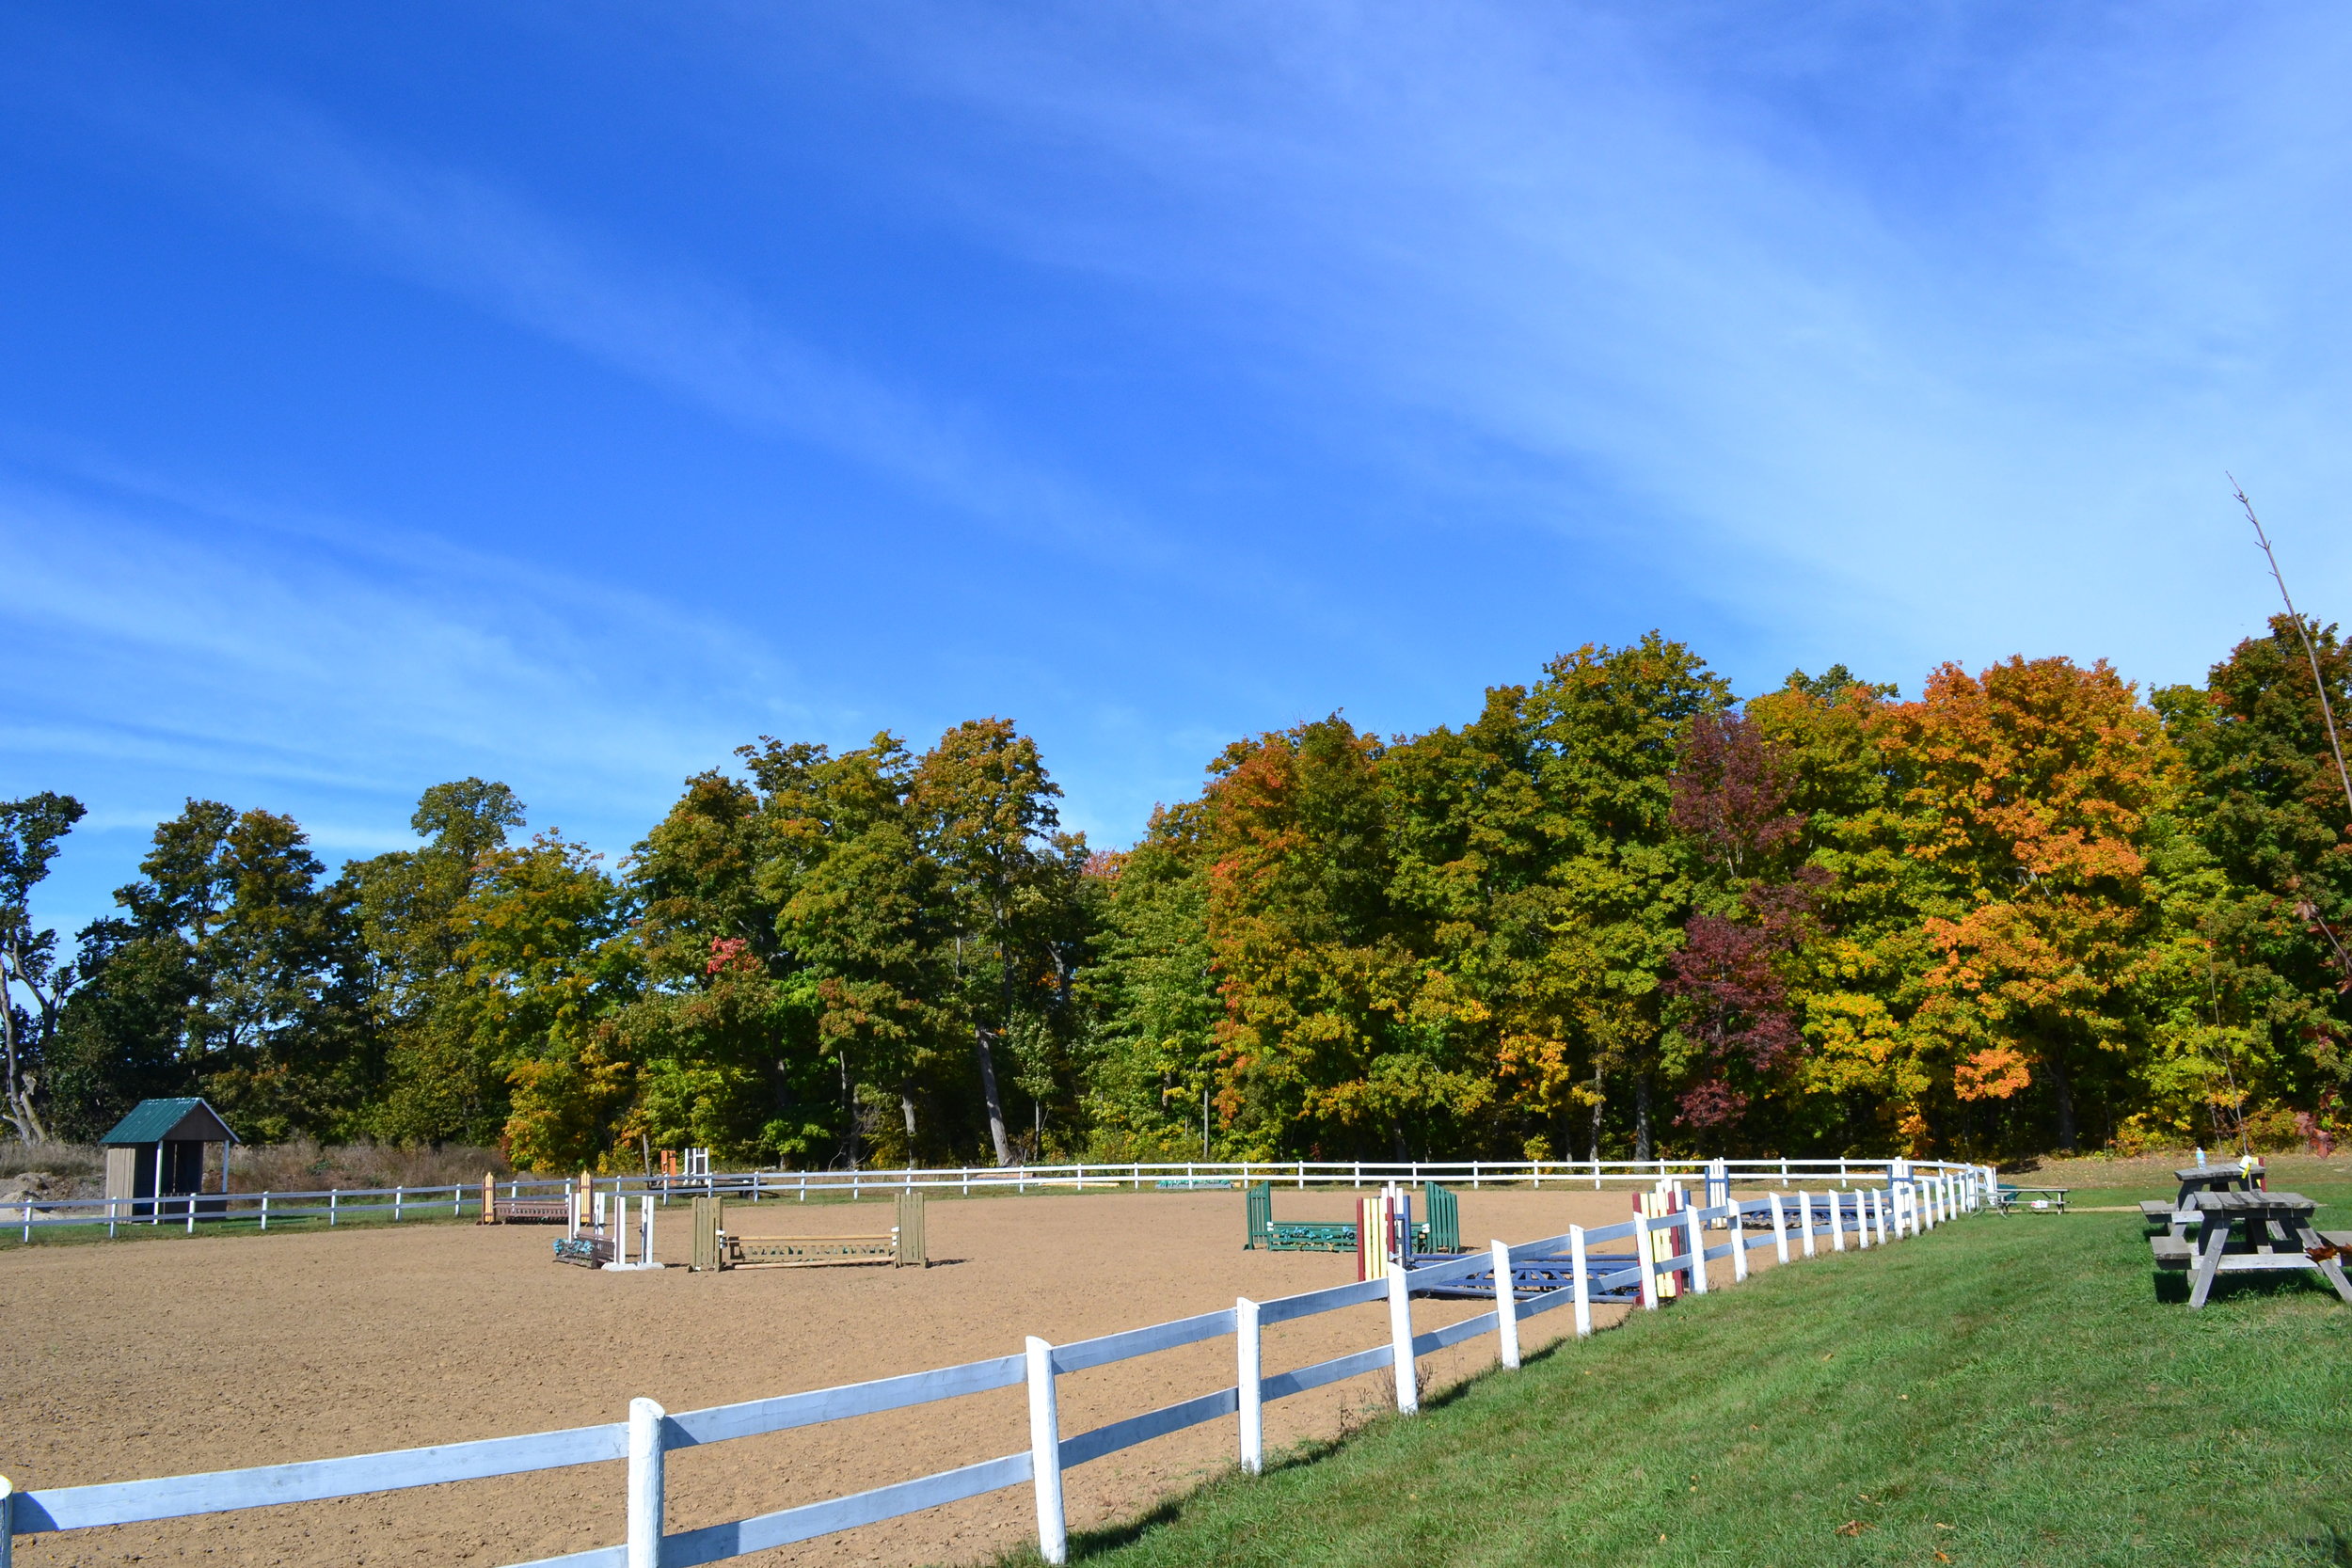  Edenview Equestrian Center Fall 2015 